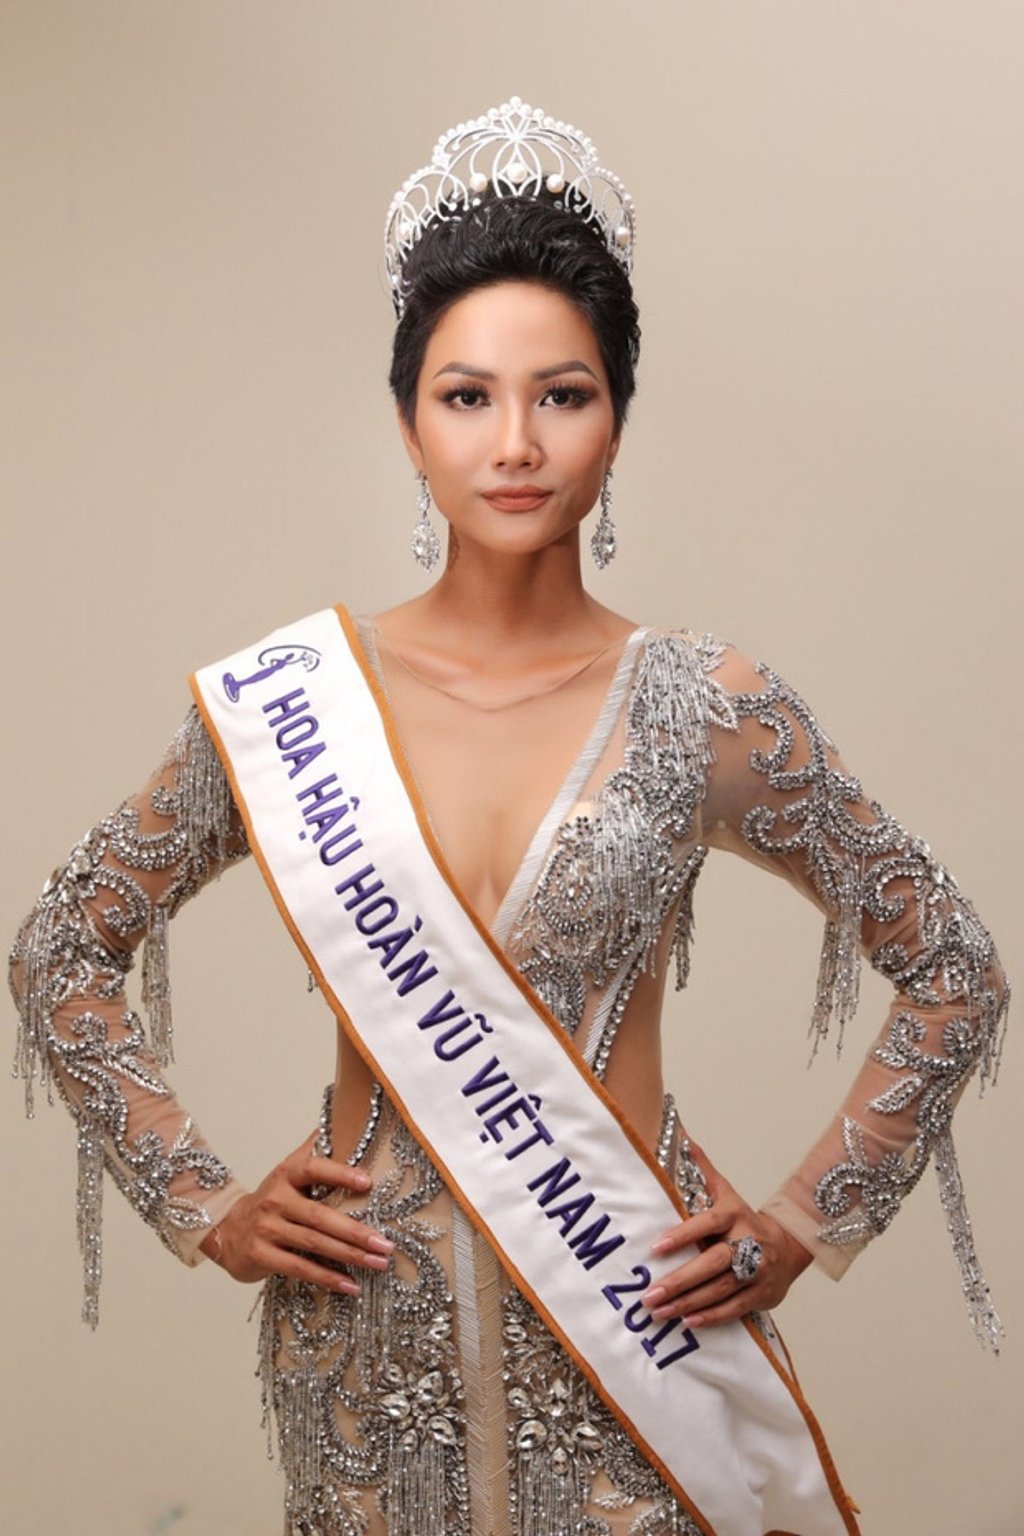 Khi trở thành Hoa hậu Hoàn vũ Việt Nam, tân Hoa hậu sẽ được nhận căn hộ phần thưởng để ở trong 2 năm nhiệm kỳ.